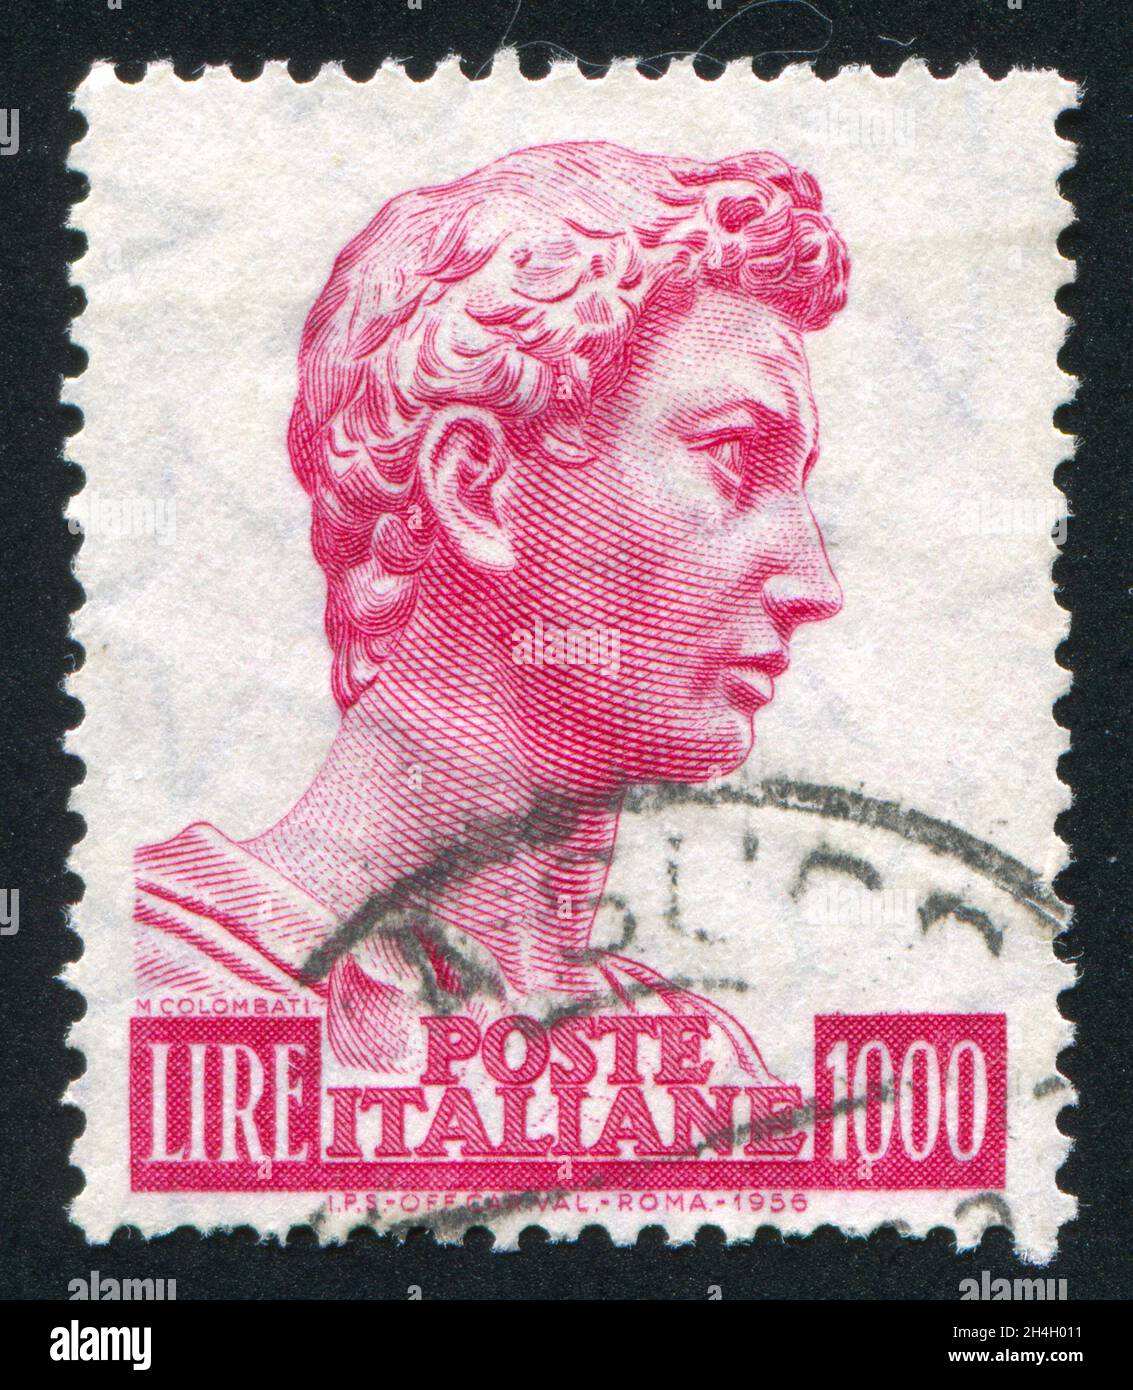 ITALIE - VERS 1956: Timbre imprimé par l'Italie, montre Saint-George, par Donatello, vers 1956 Banque D'Images